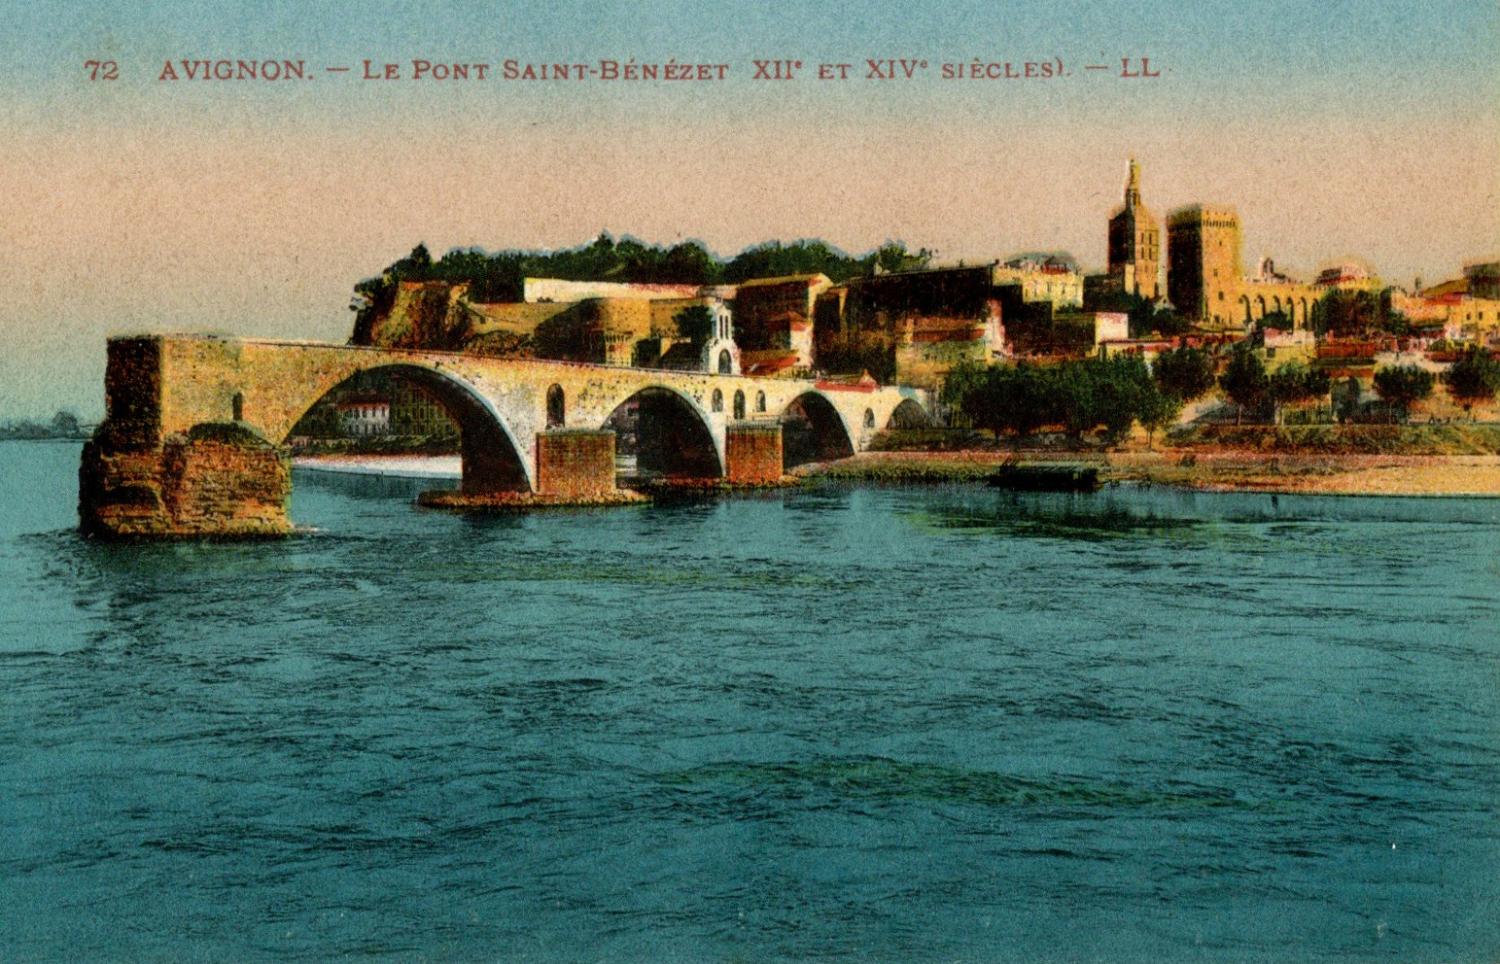 Avignon - Le Pont Saint-Bénézet (XIIe et XIVe siècles)